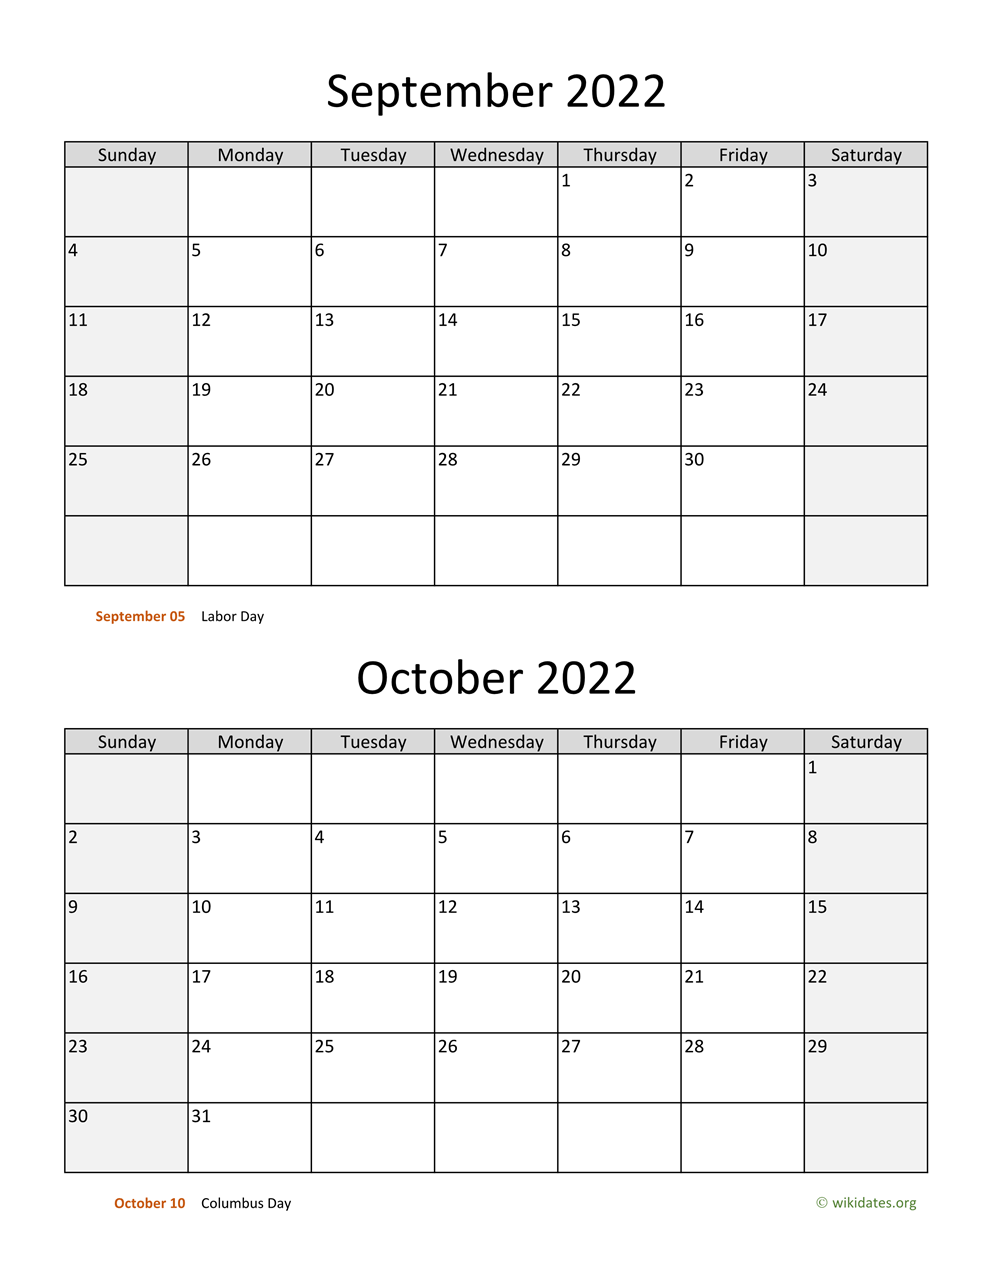 September And October Calendar 2022 September And October 2022 Calendar | Wikidates.org